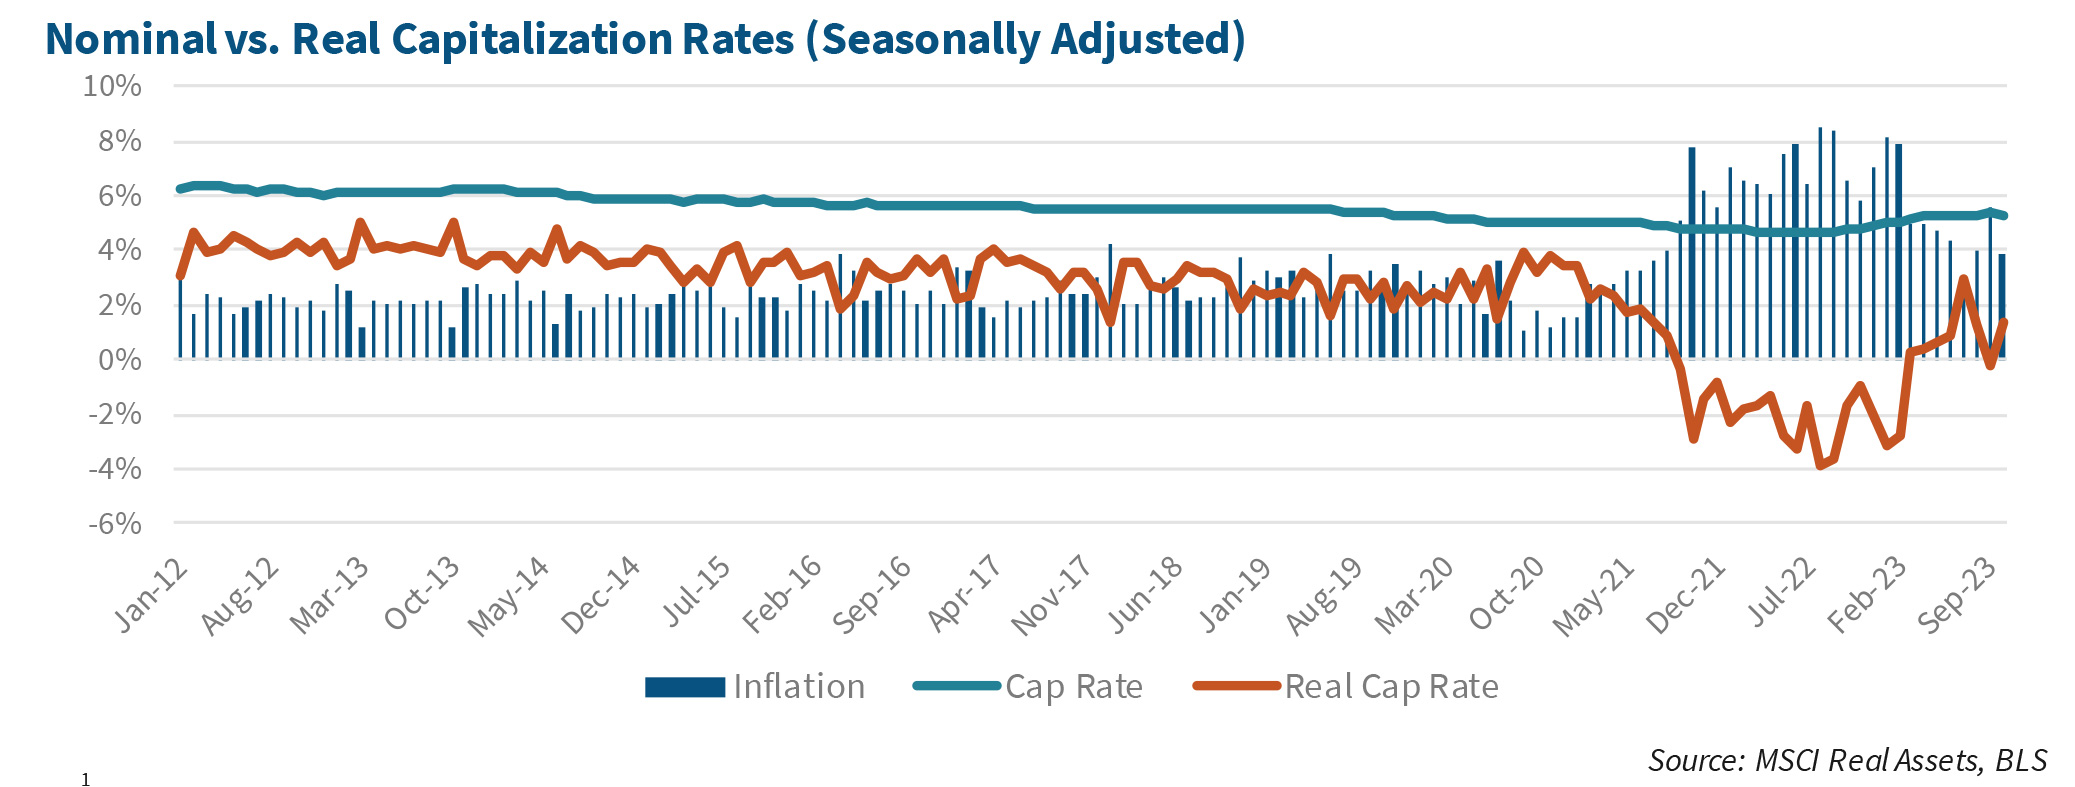 Nominal vs. Real Capitalization Rates (Seasonally Adjusted)